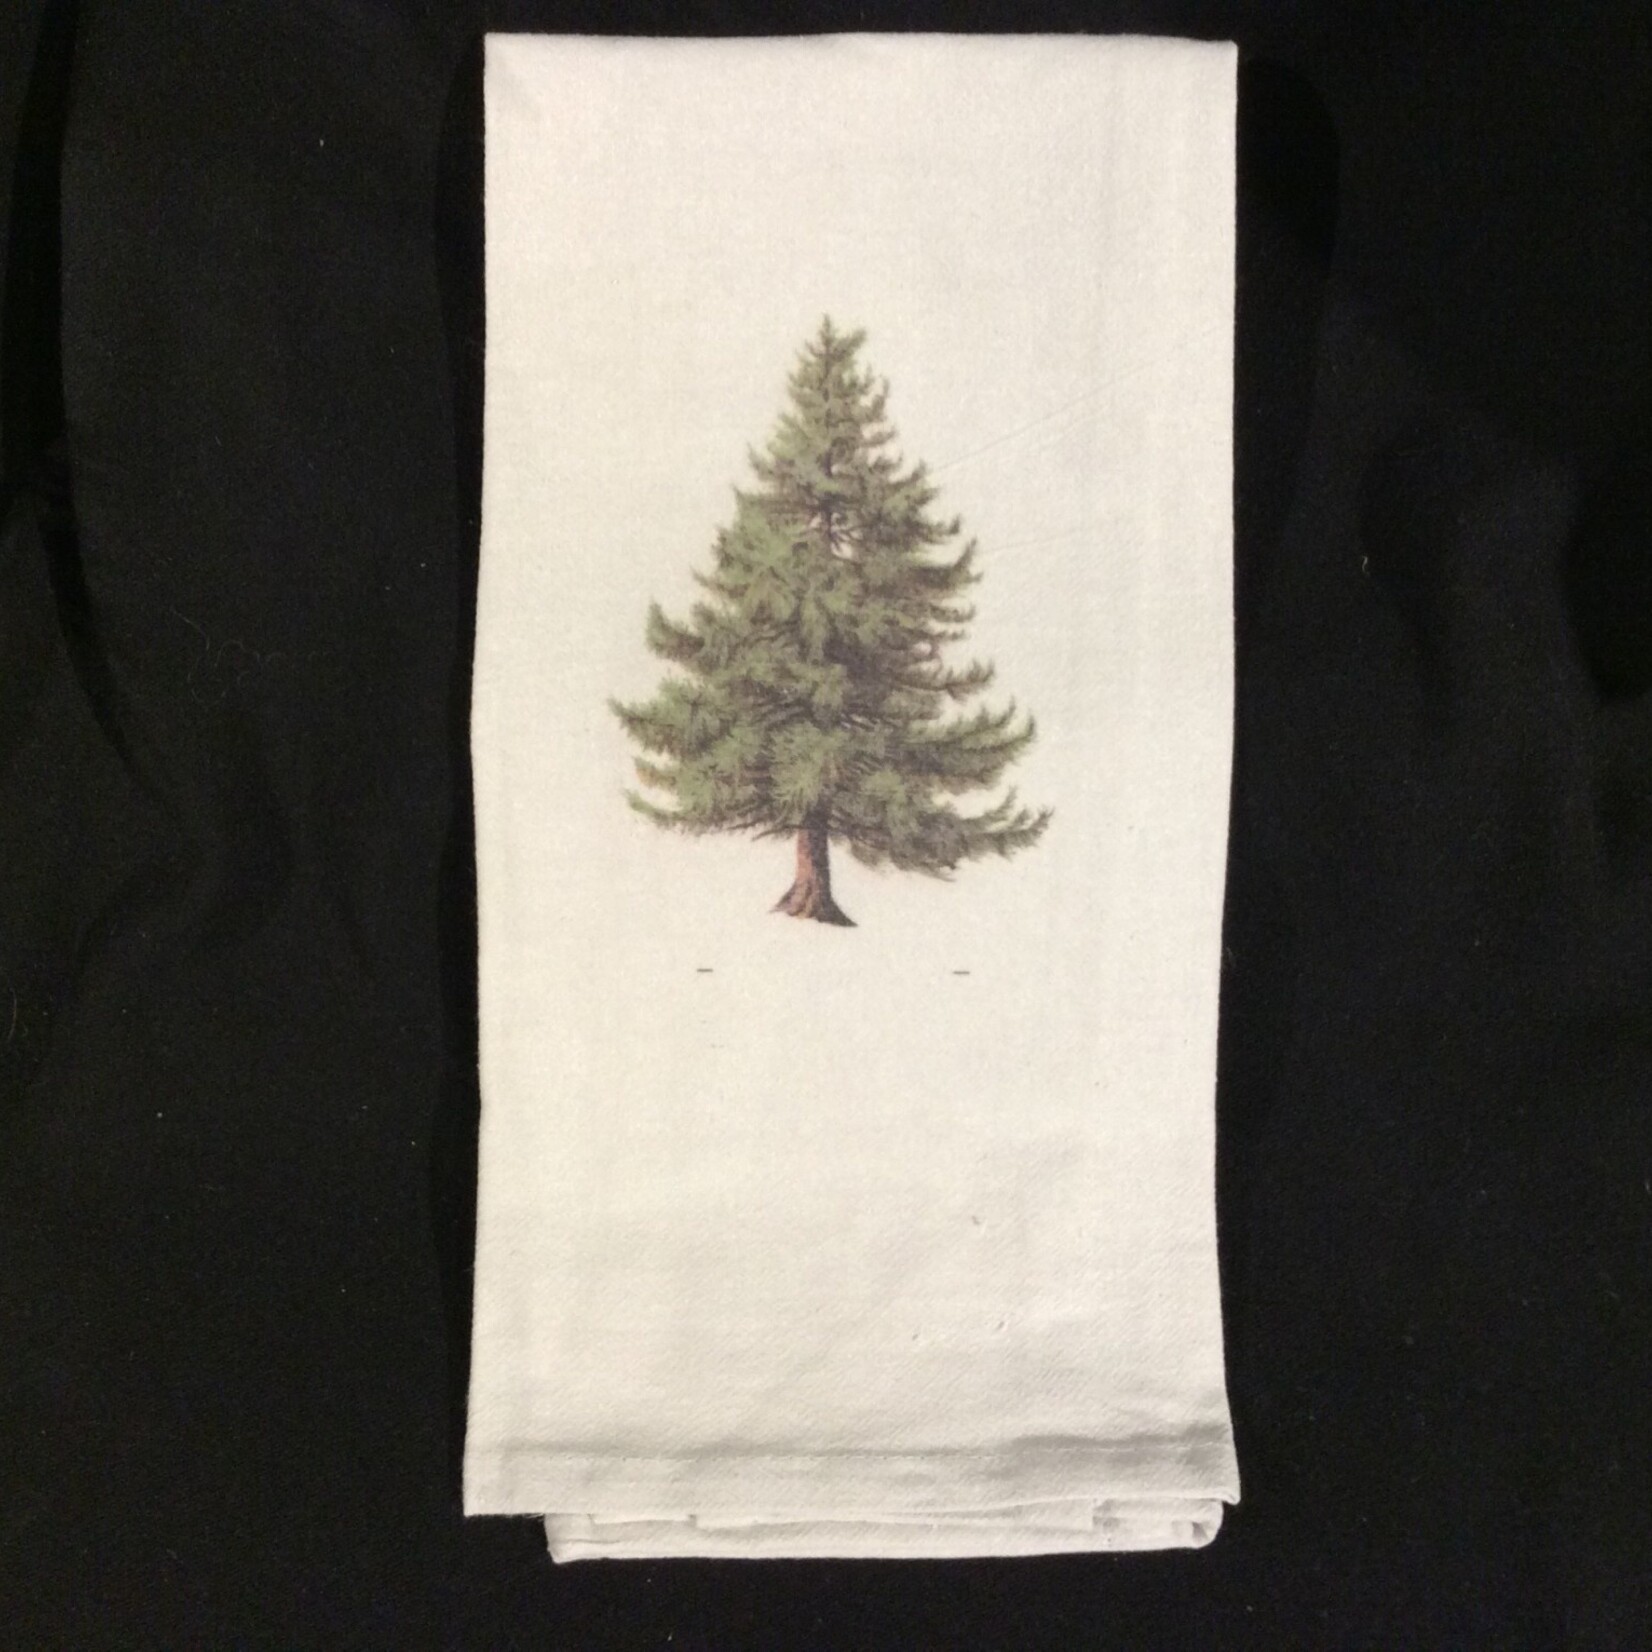 Pine Tree Towel (Blank)